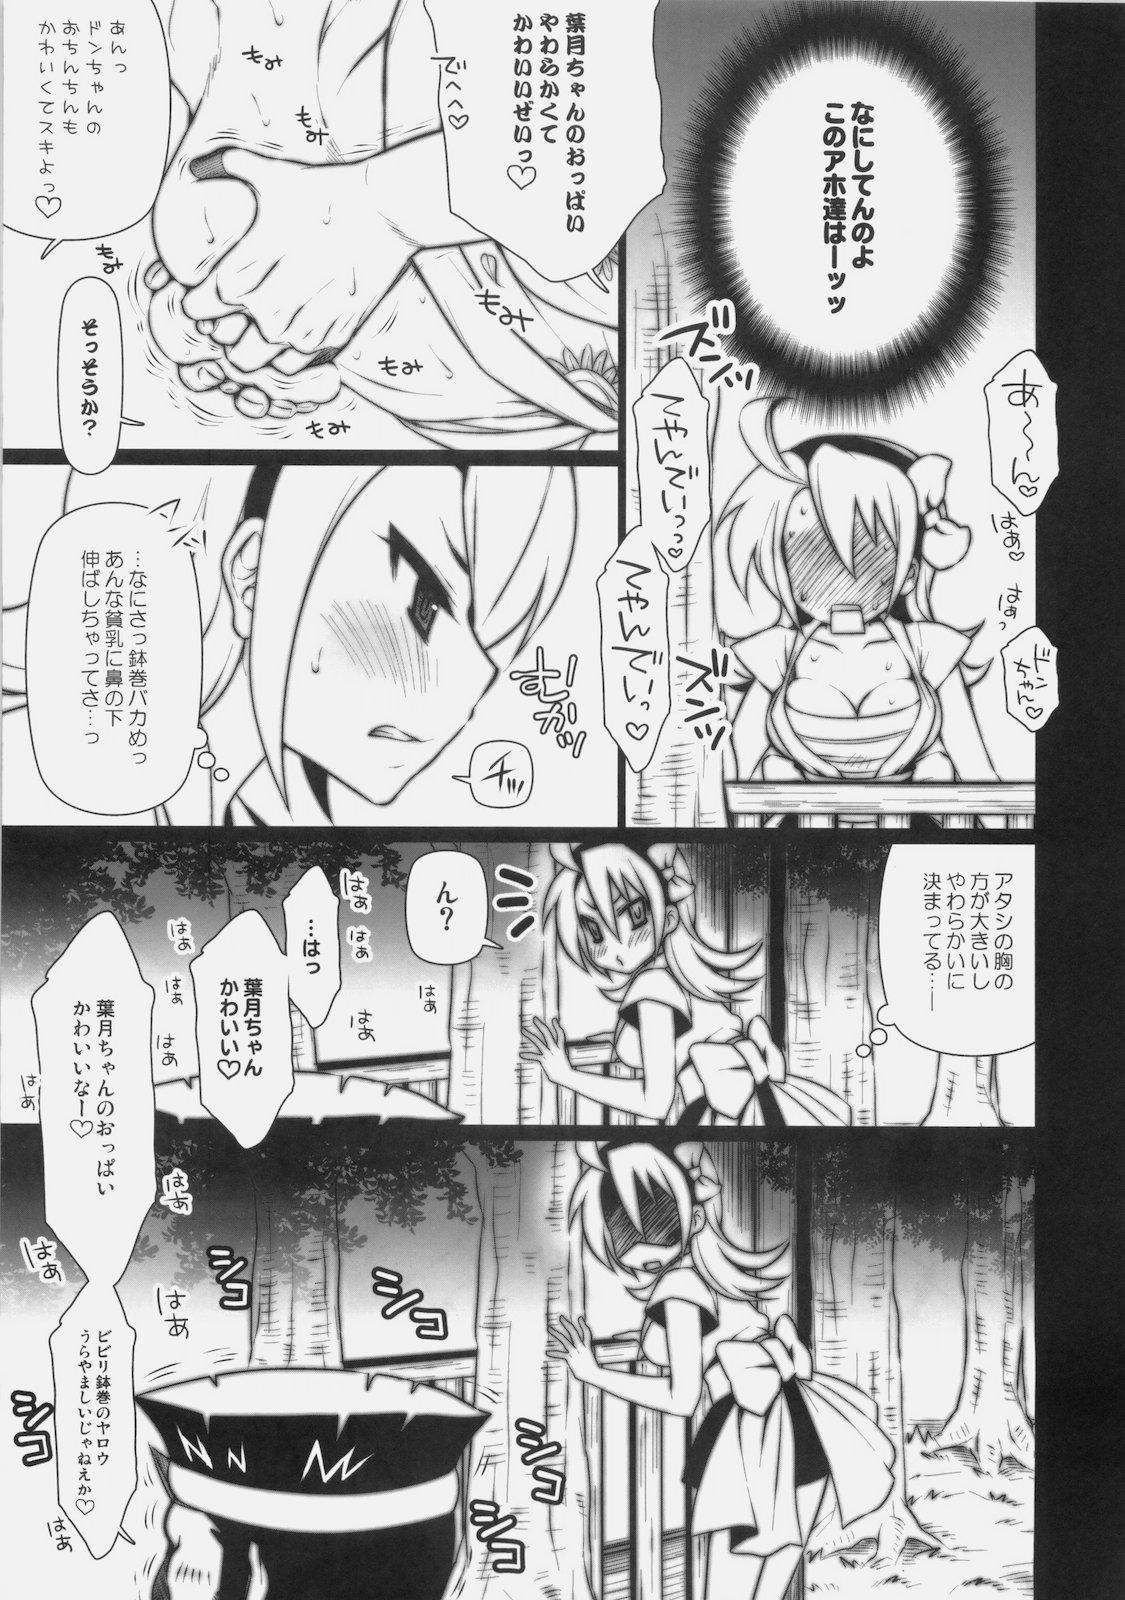 Romantic Matsuri no Yoru ni - Ao don hanabi no kiwami Cumfacial - Page 4